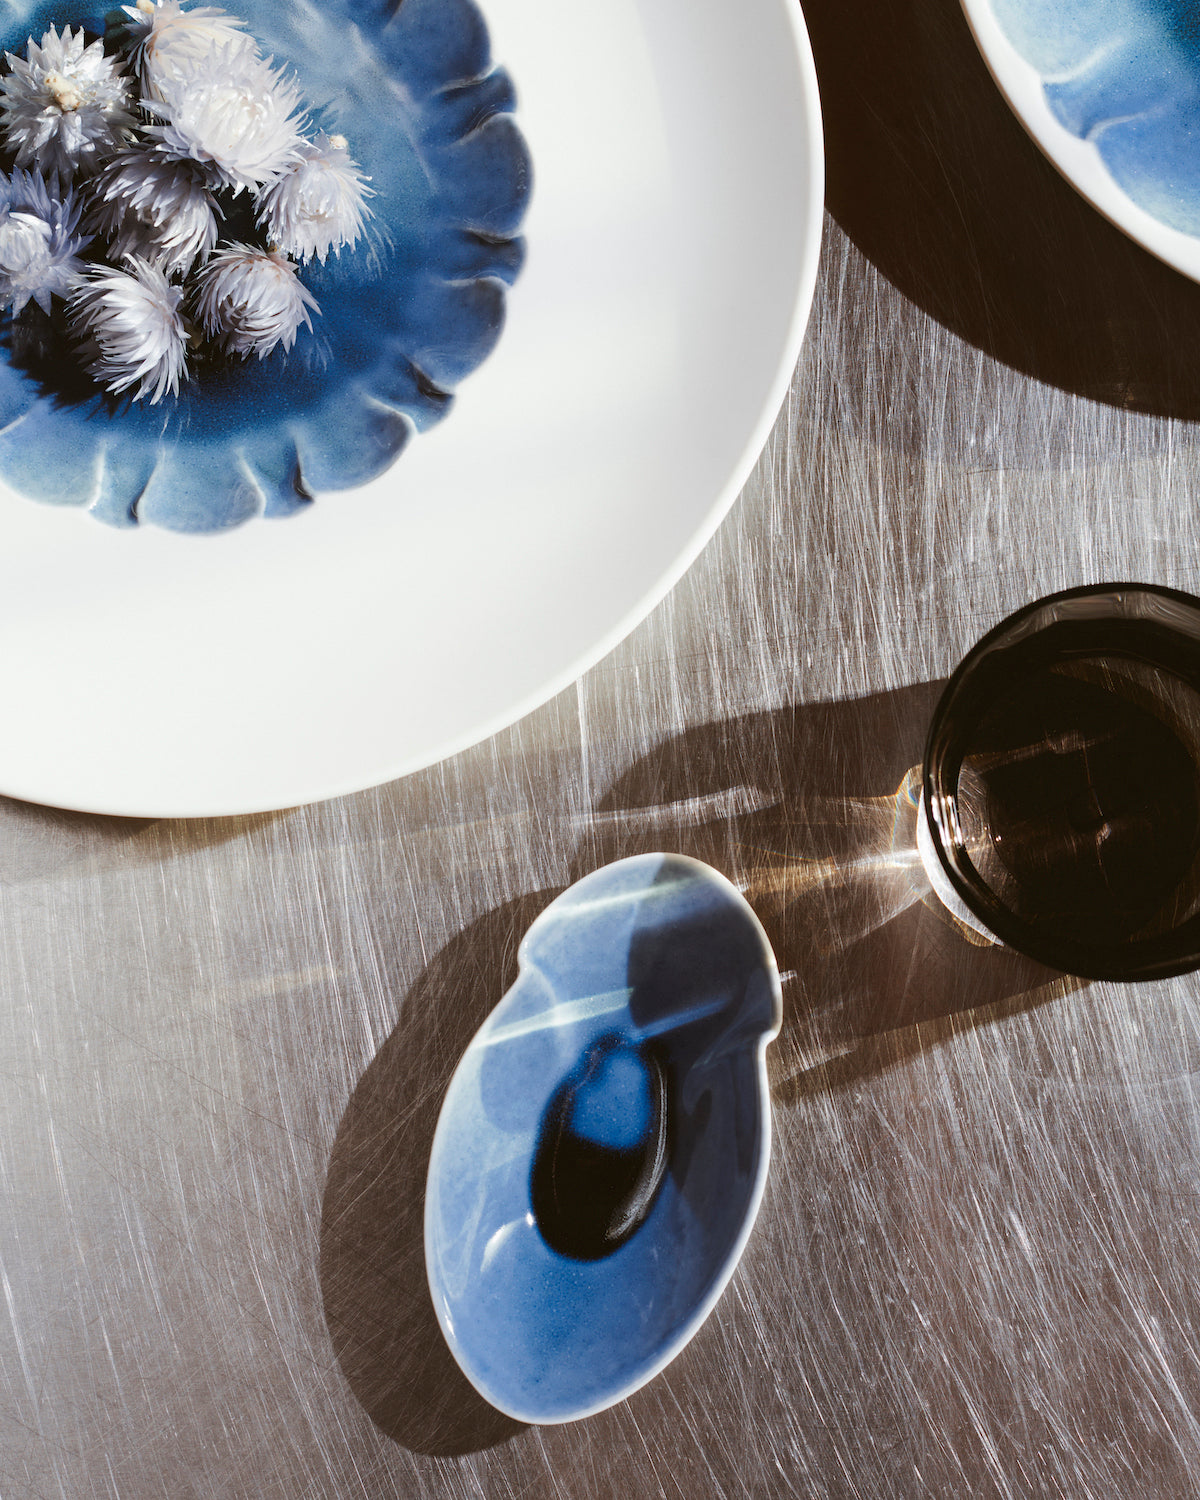 Eine blaue Keramikschale mit Blumenmotiv und weißen und blauen Blumen steht neben einem ovalen Keramikstück mit glänzender Oberfläche und einer dunklen Flüssigkeit in der Mitte, auf einer strukturierten Oberfläche, in deren Rahmen teilweise ein Metallbecher sichtbar ist.